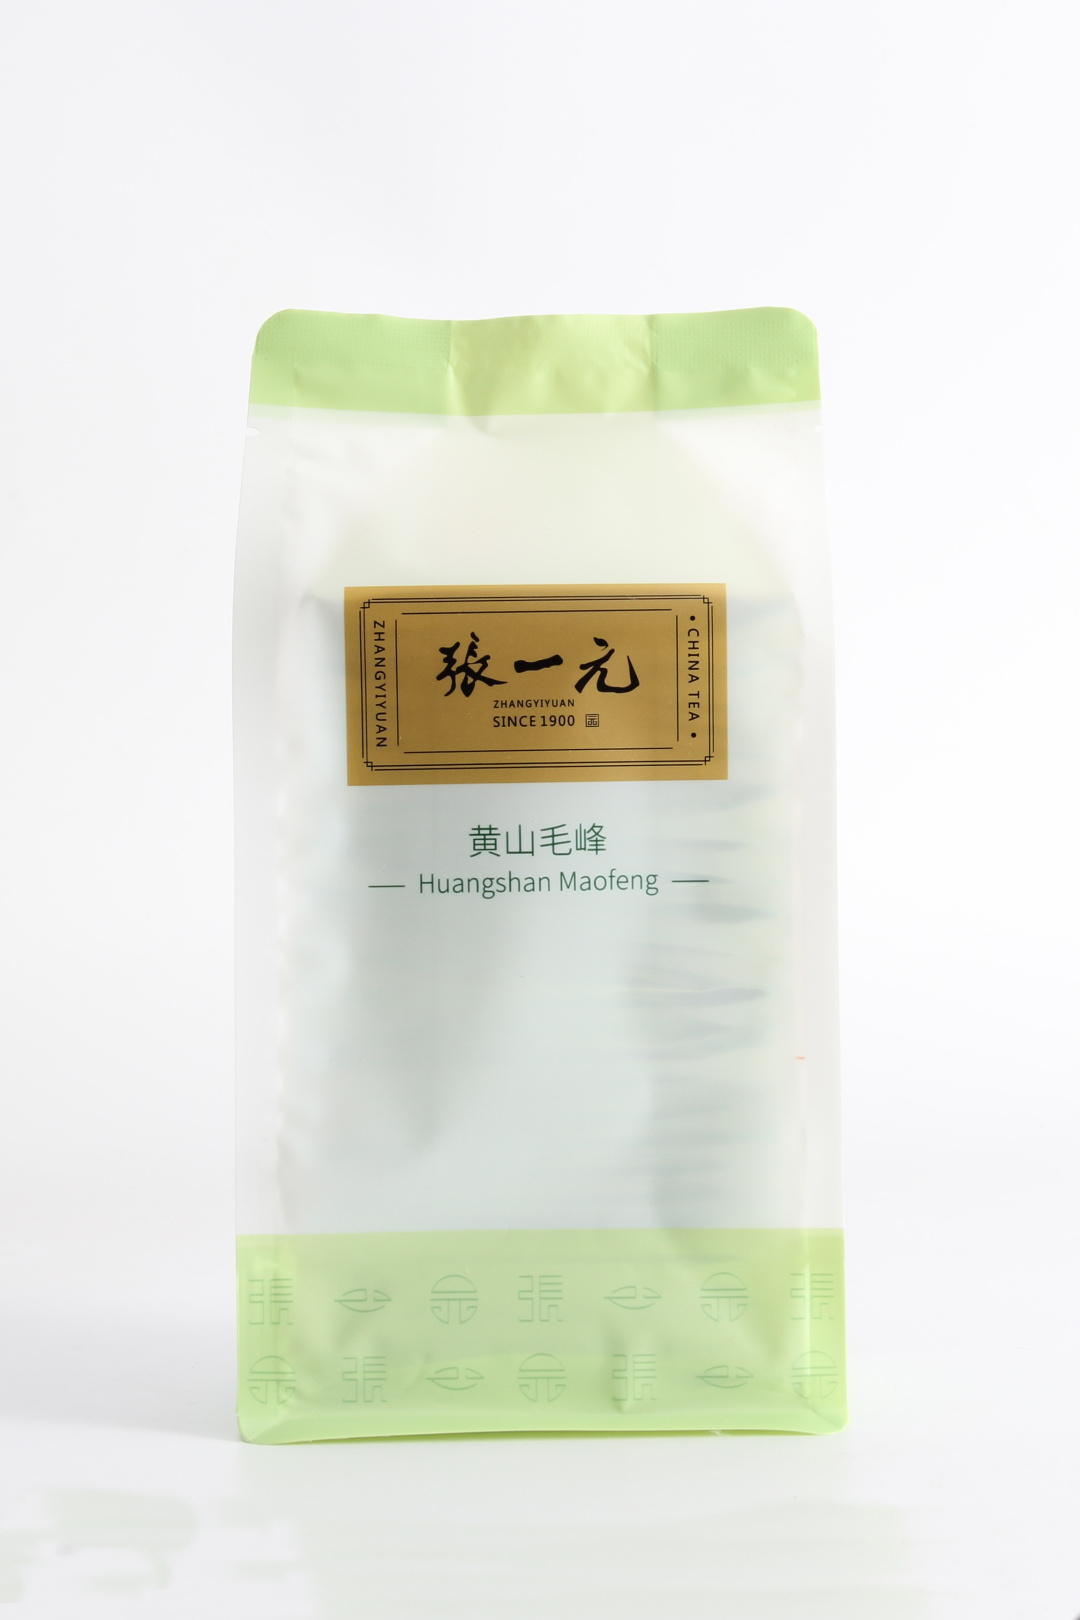 【绿茶展卖季 包邮】张一元茶叶 经典系列 绿茶 黄山毛峰 袋装 80g